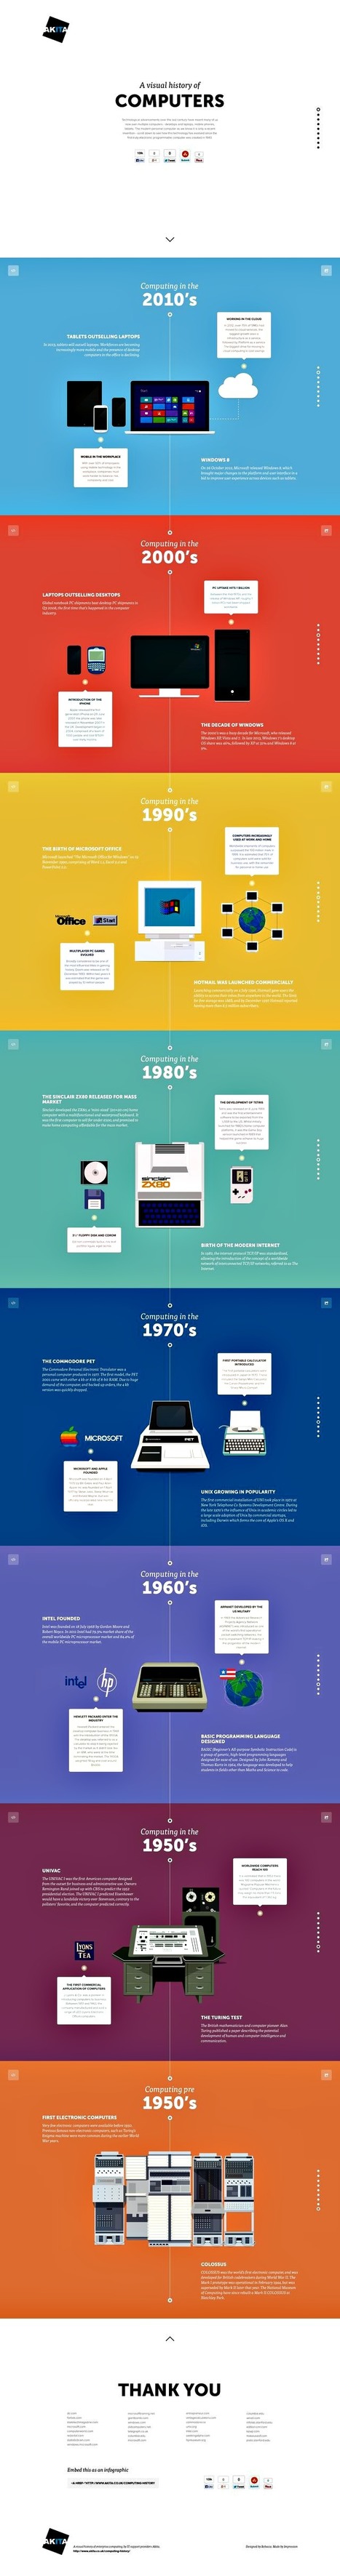 L'histoire des ordinateurs (infographie) | Tout le web | Scoop.it